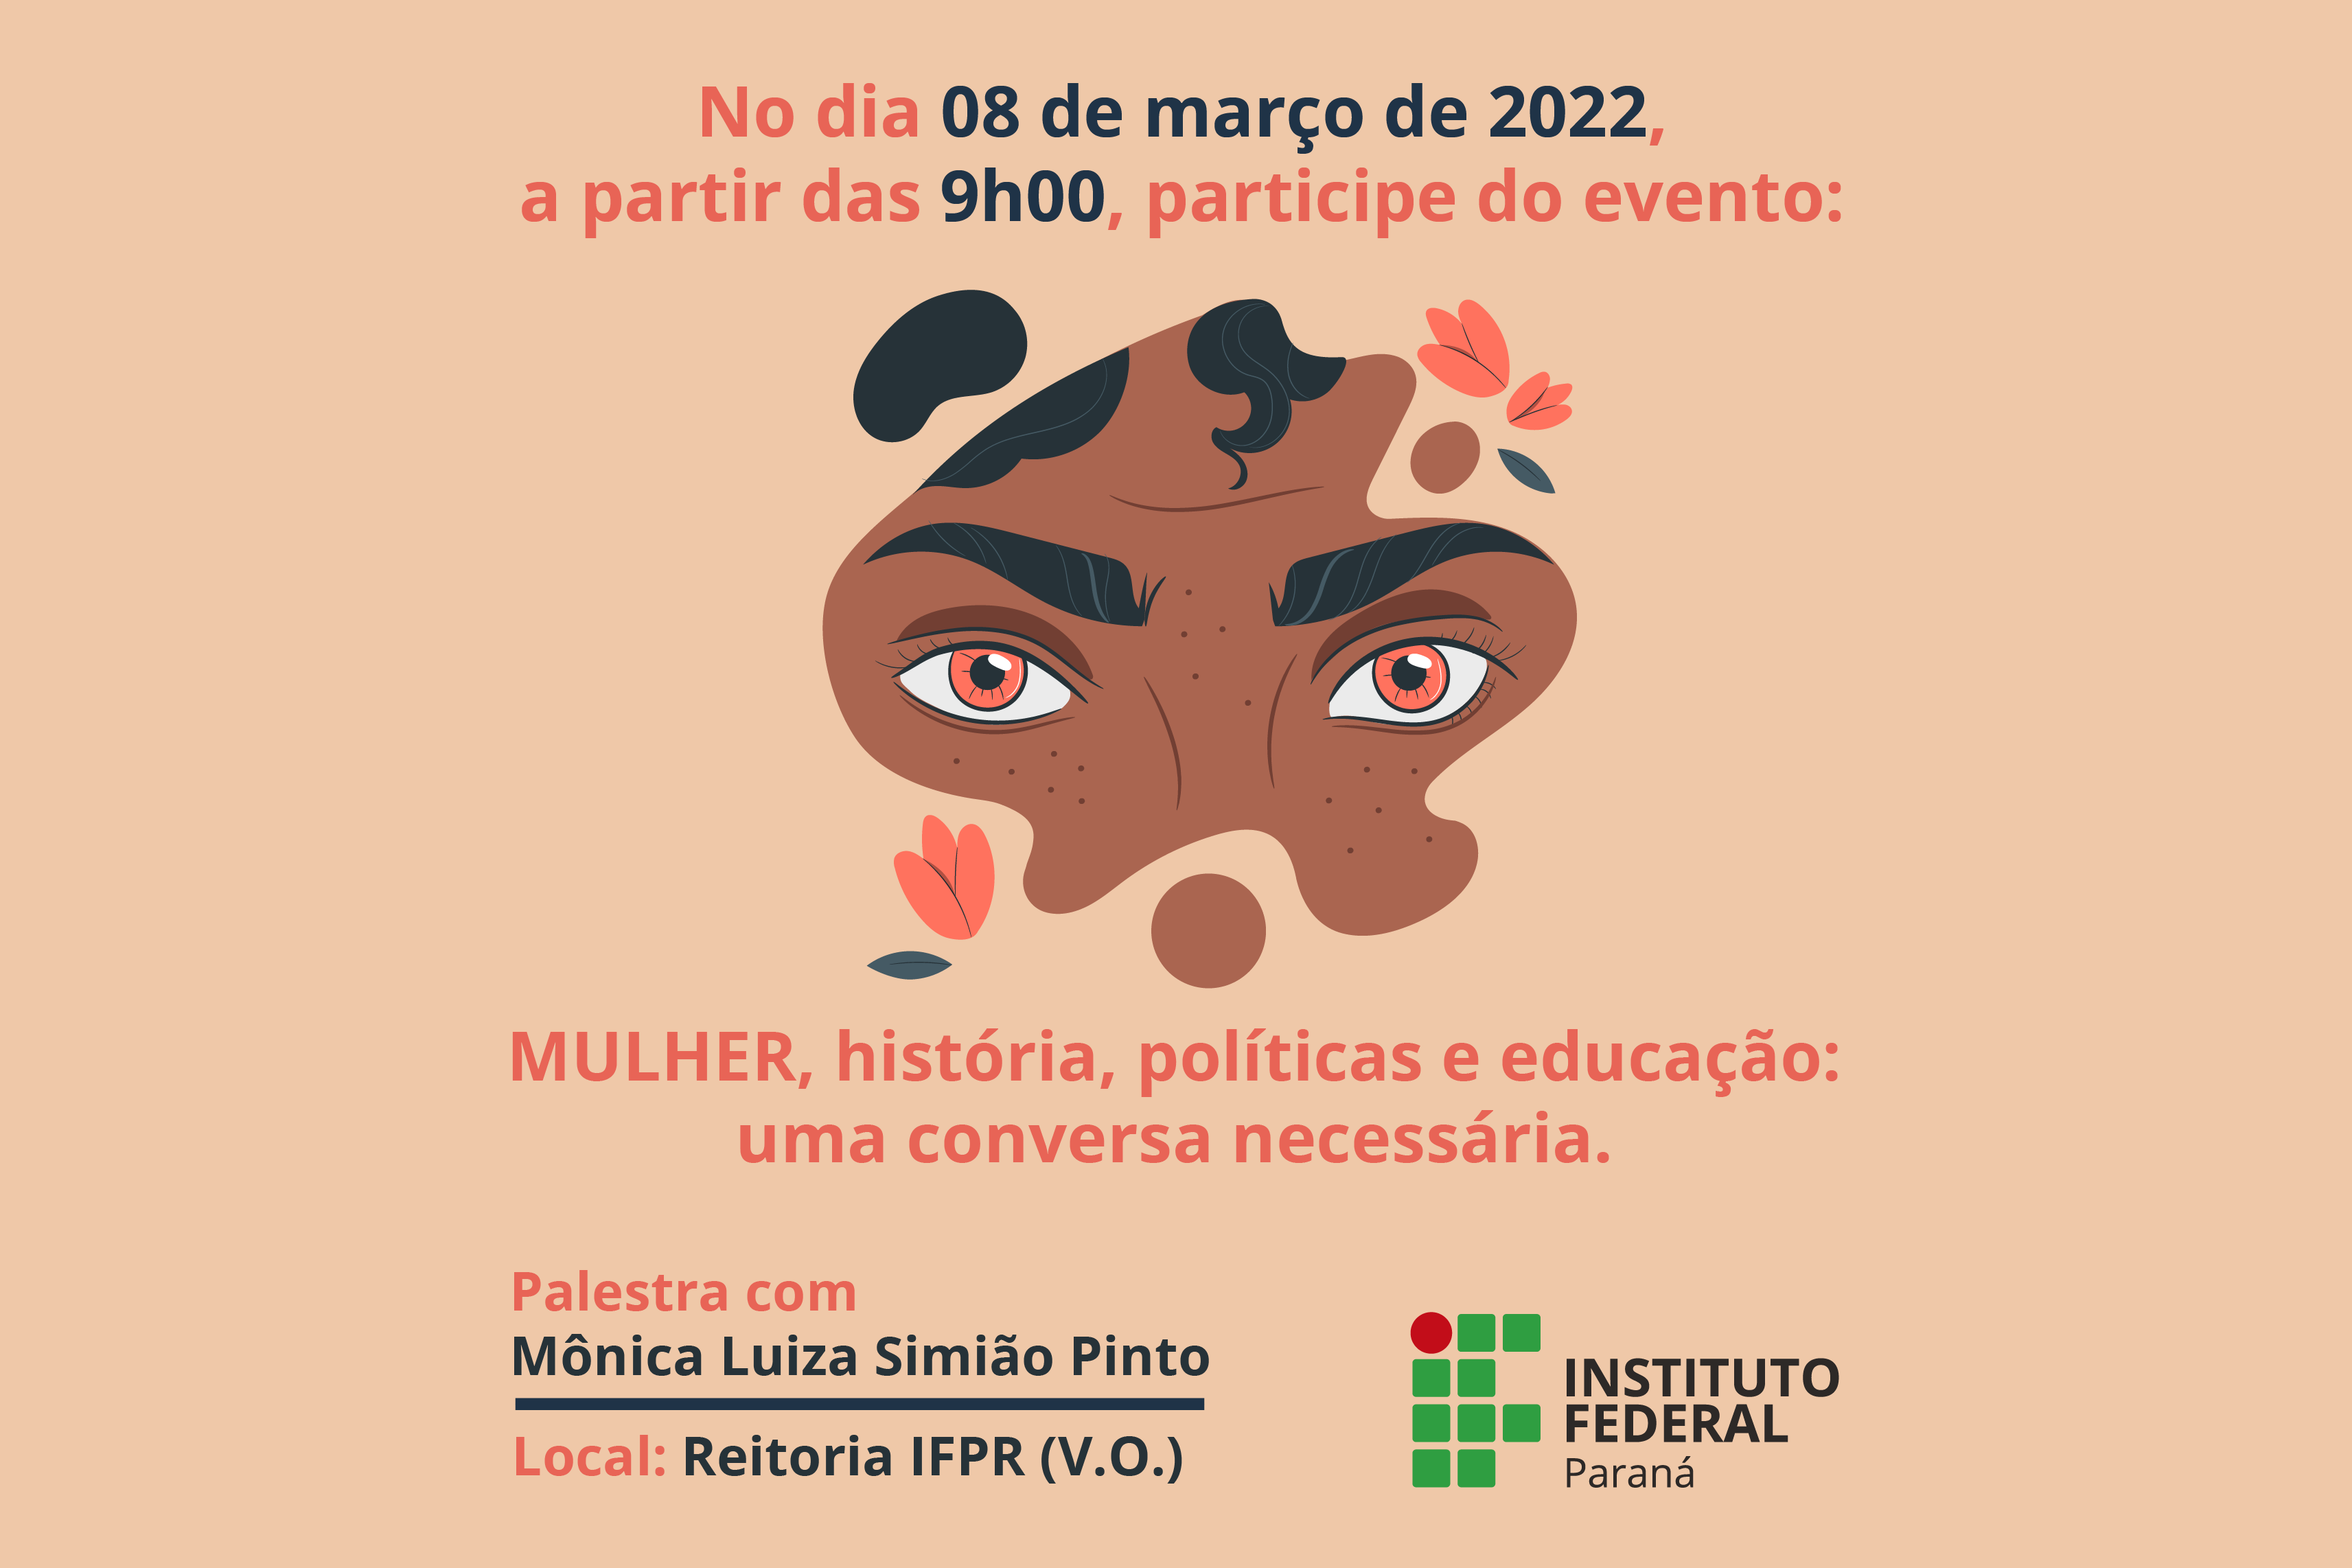 Imagem com fundo colorido. Em primeiro plano está o texto: "No dia 8 de março de 2022, a partir das 9h, participe do evento Mulher, história, políticas e educação: uma conversa necessária" e "Palestra com Mônica Luiza Simião Pinto".